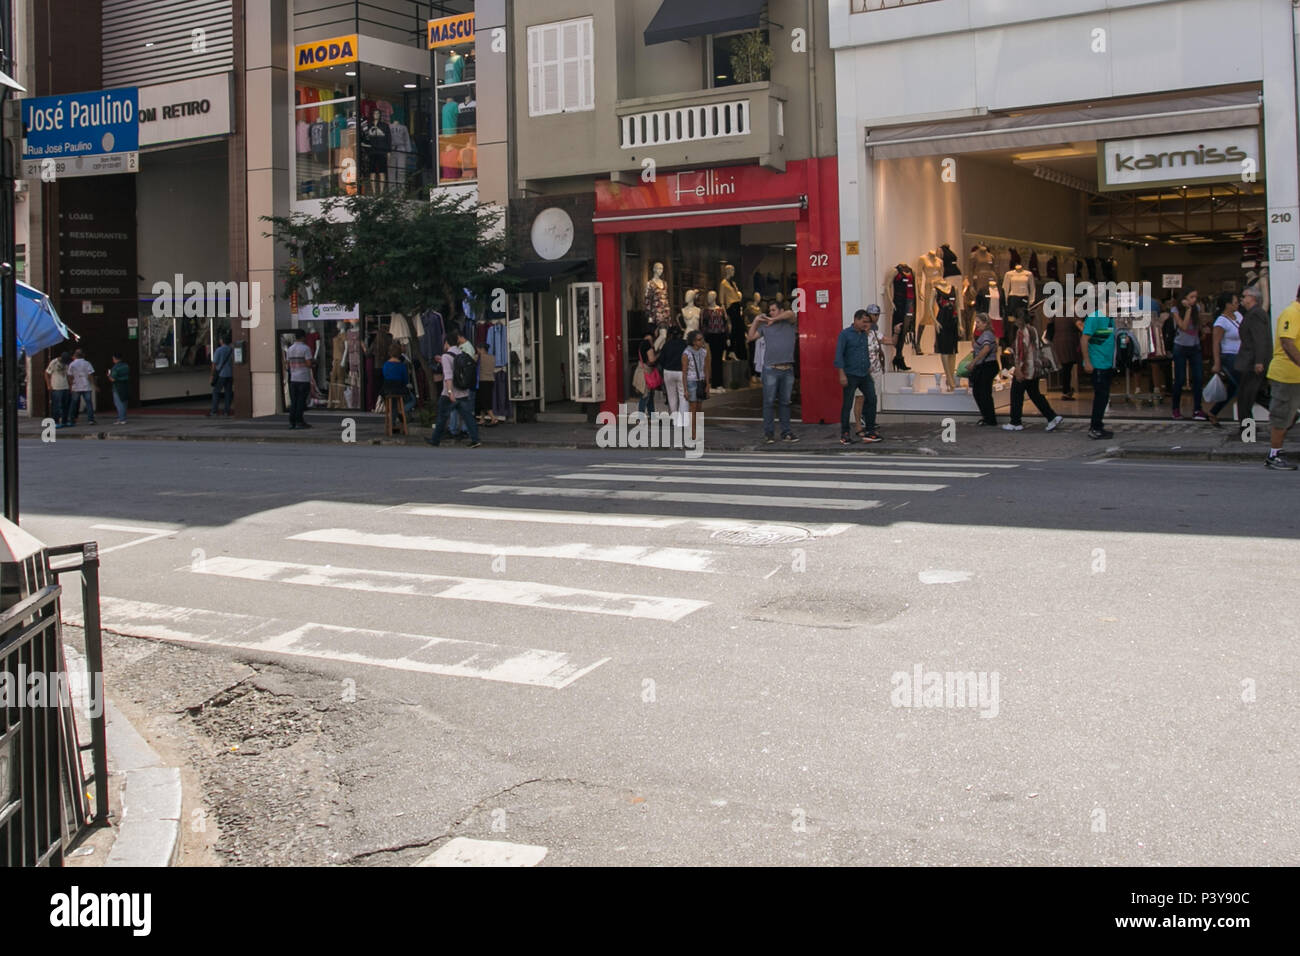 Na foto produzida nesta Terça-Feira (25), a Rua José Paulino que possui  inúmeras lojas de roupas localizada na região central de São Paulo (SP Foto  stock - Alamy